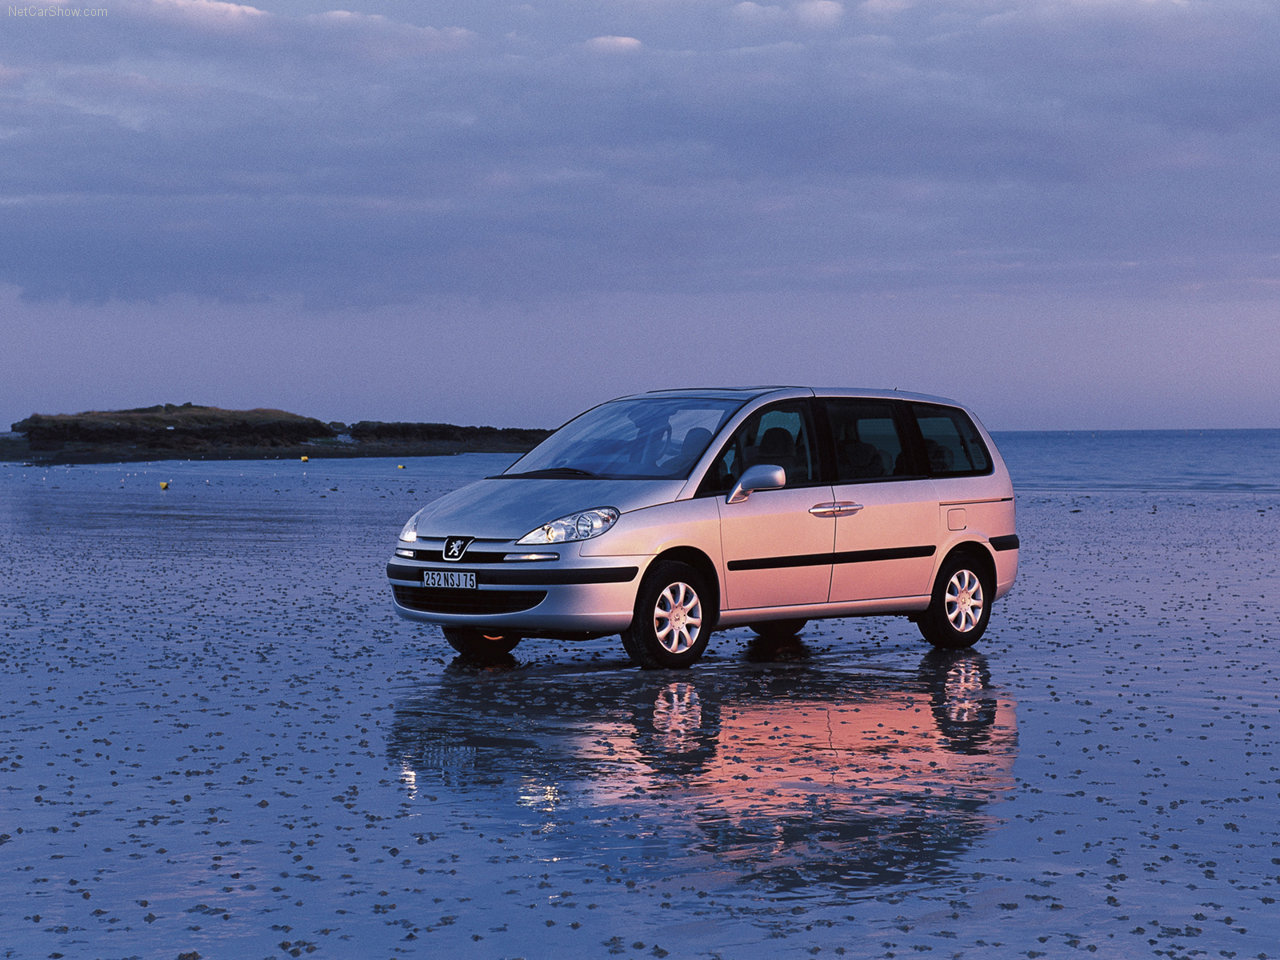 Peugeot - Populaire français d'automobiles: 2001 Peugeot 807